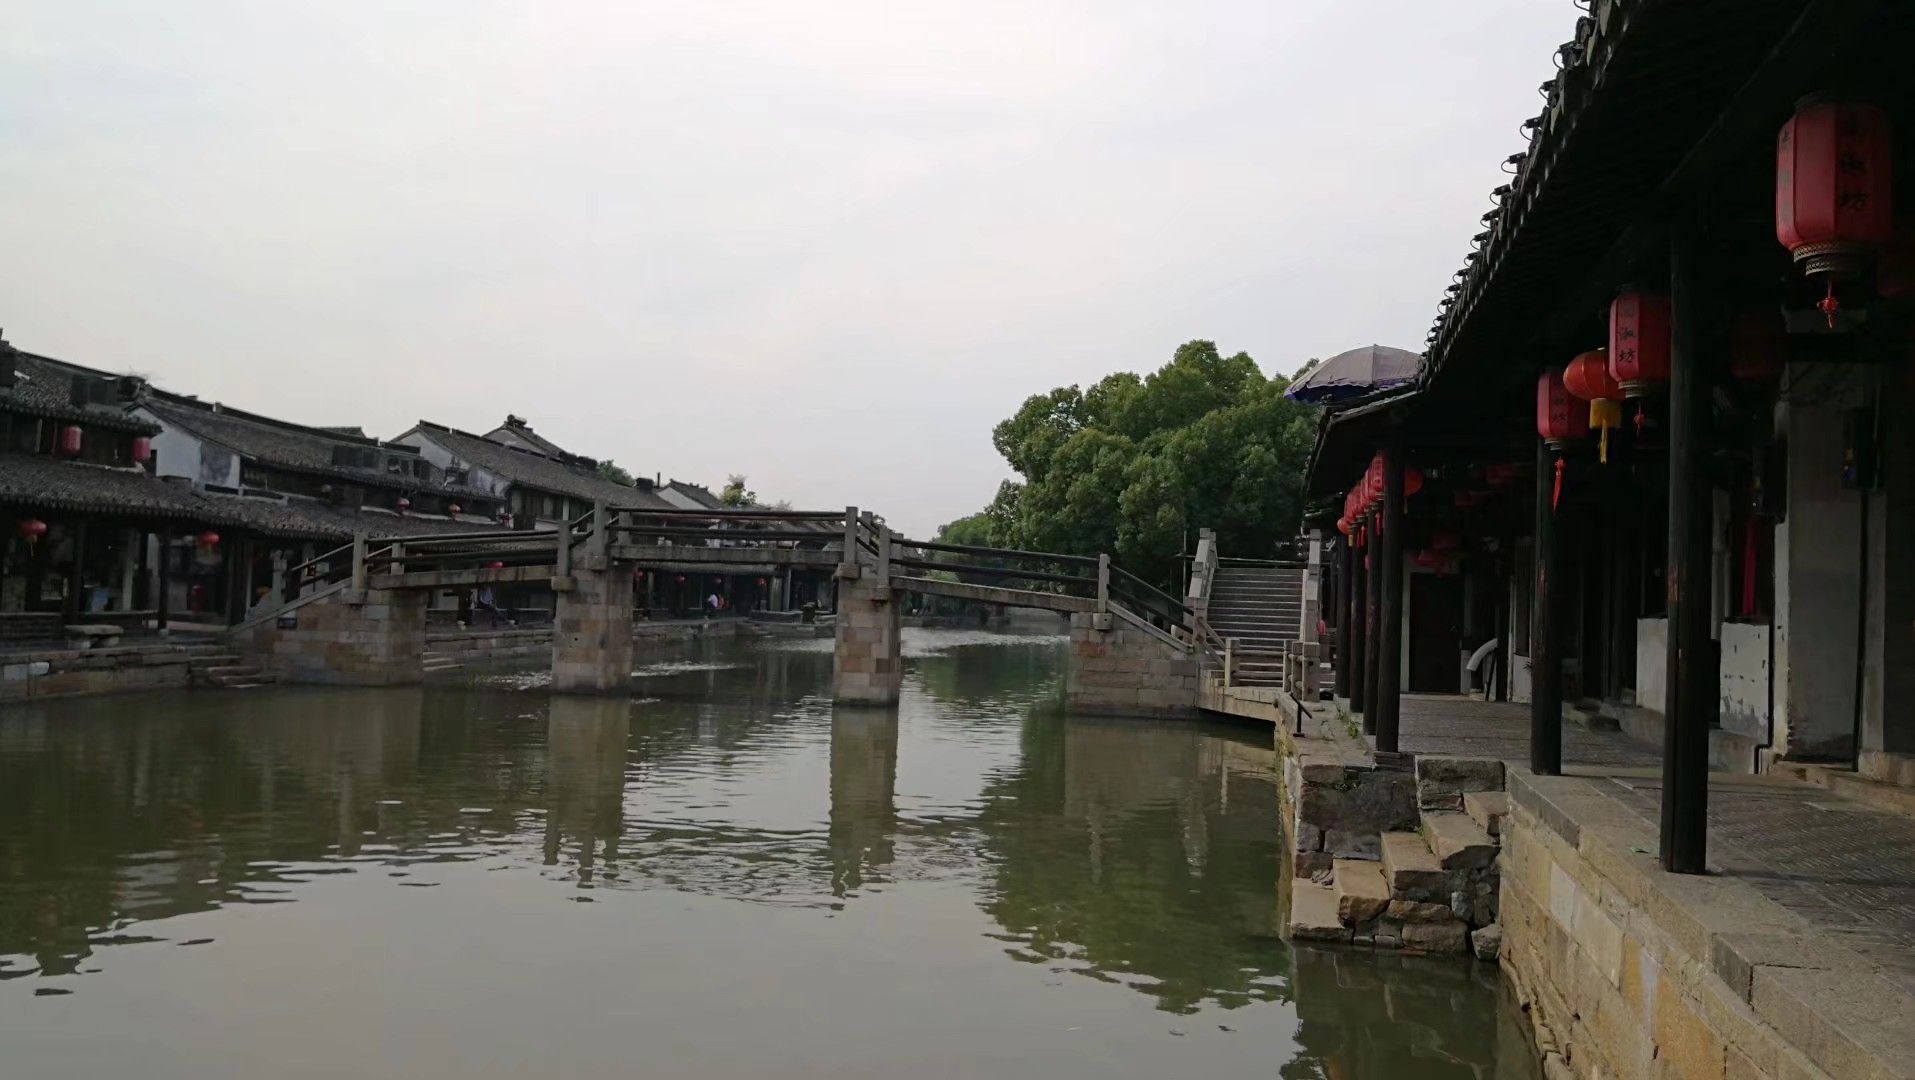 2023永宁桥游玩攻略,永宁桥是西塘镇上绝佳的观景... 【去哪儿攻略】